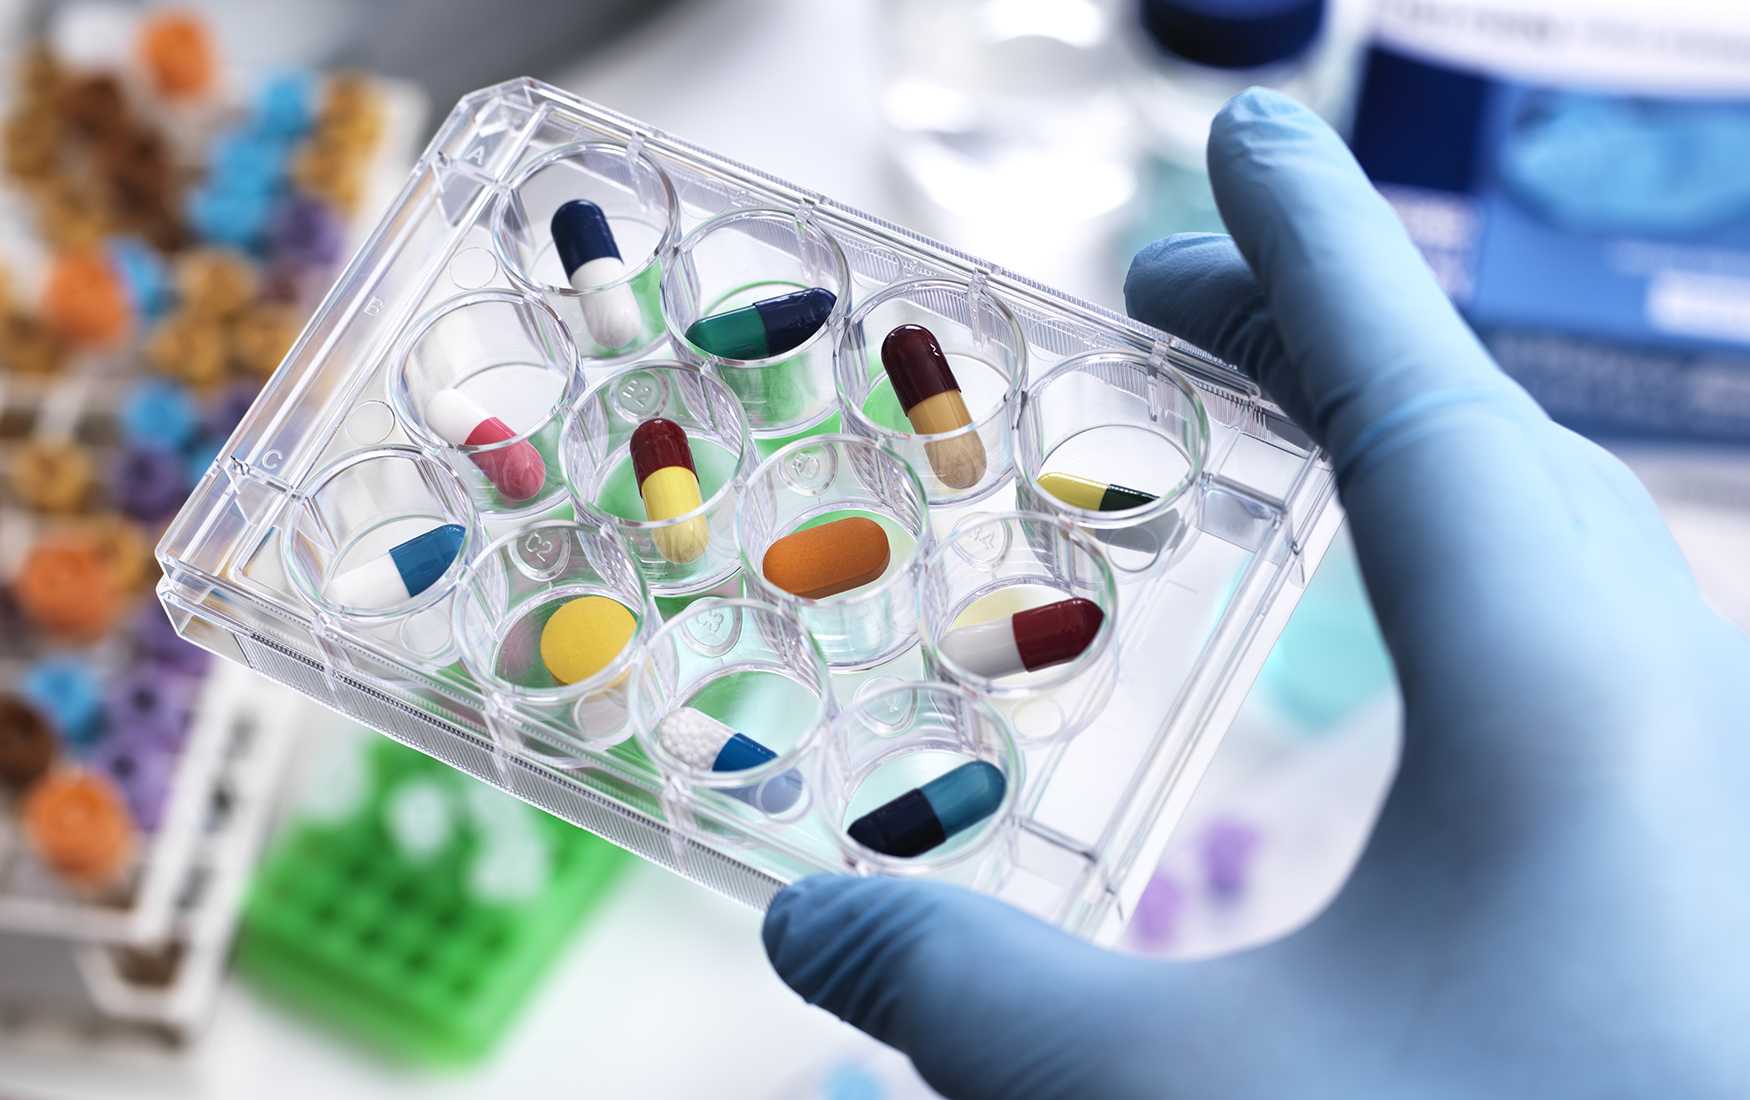 12 лучших антибиотиков - инфекционные болезни - статьи - поиск лекарств